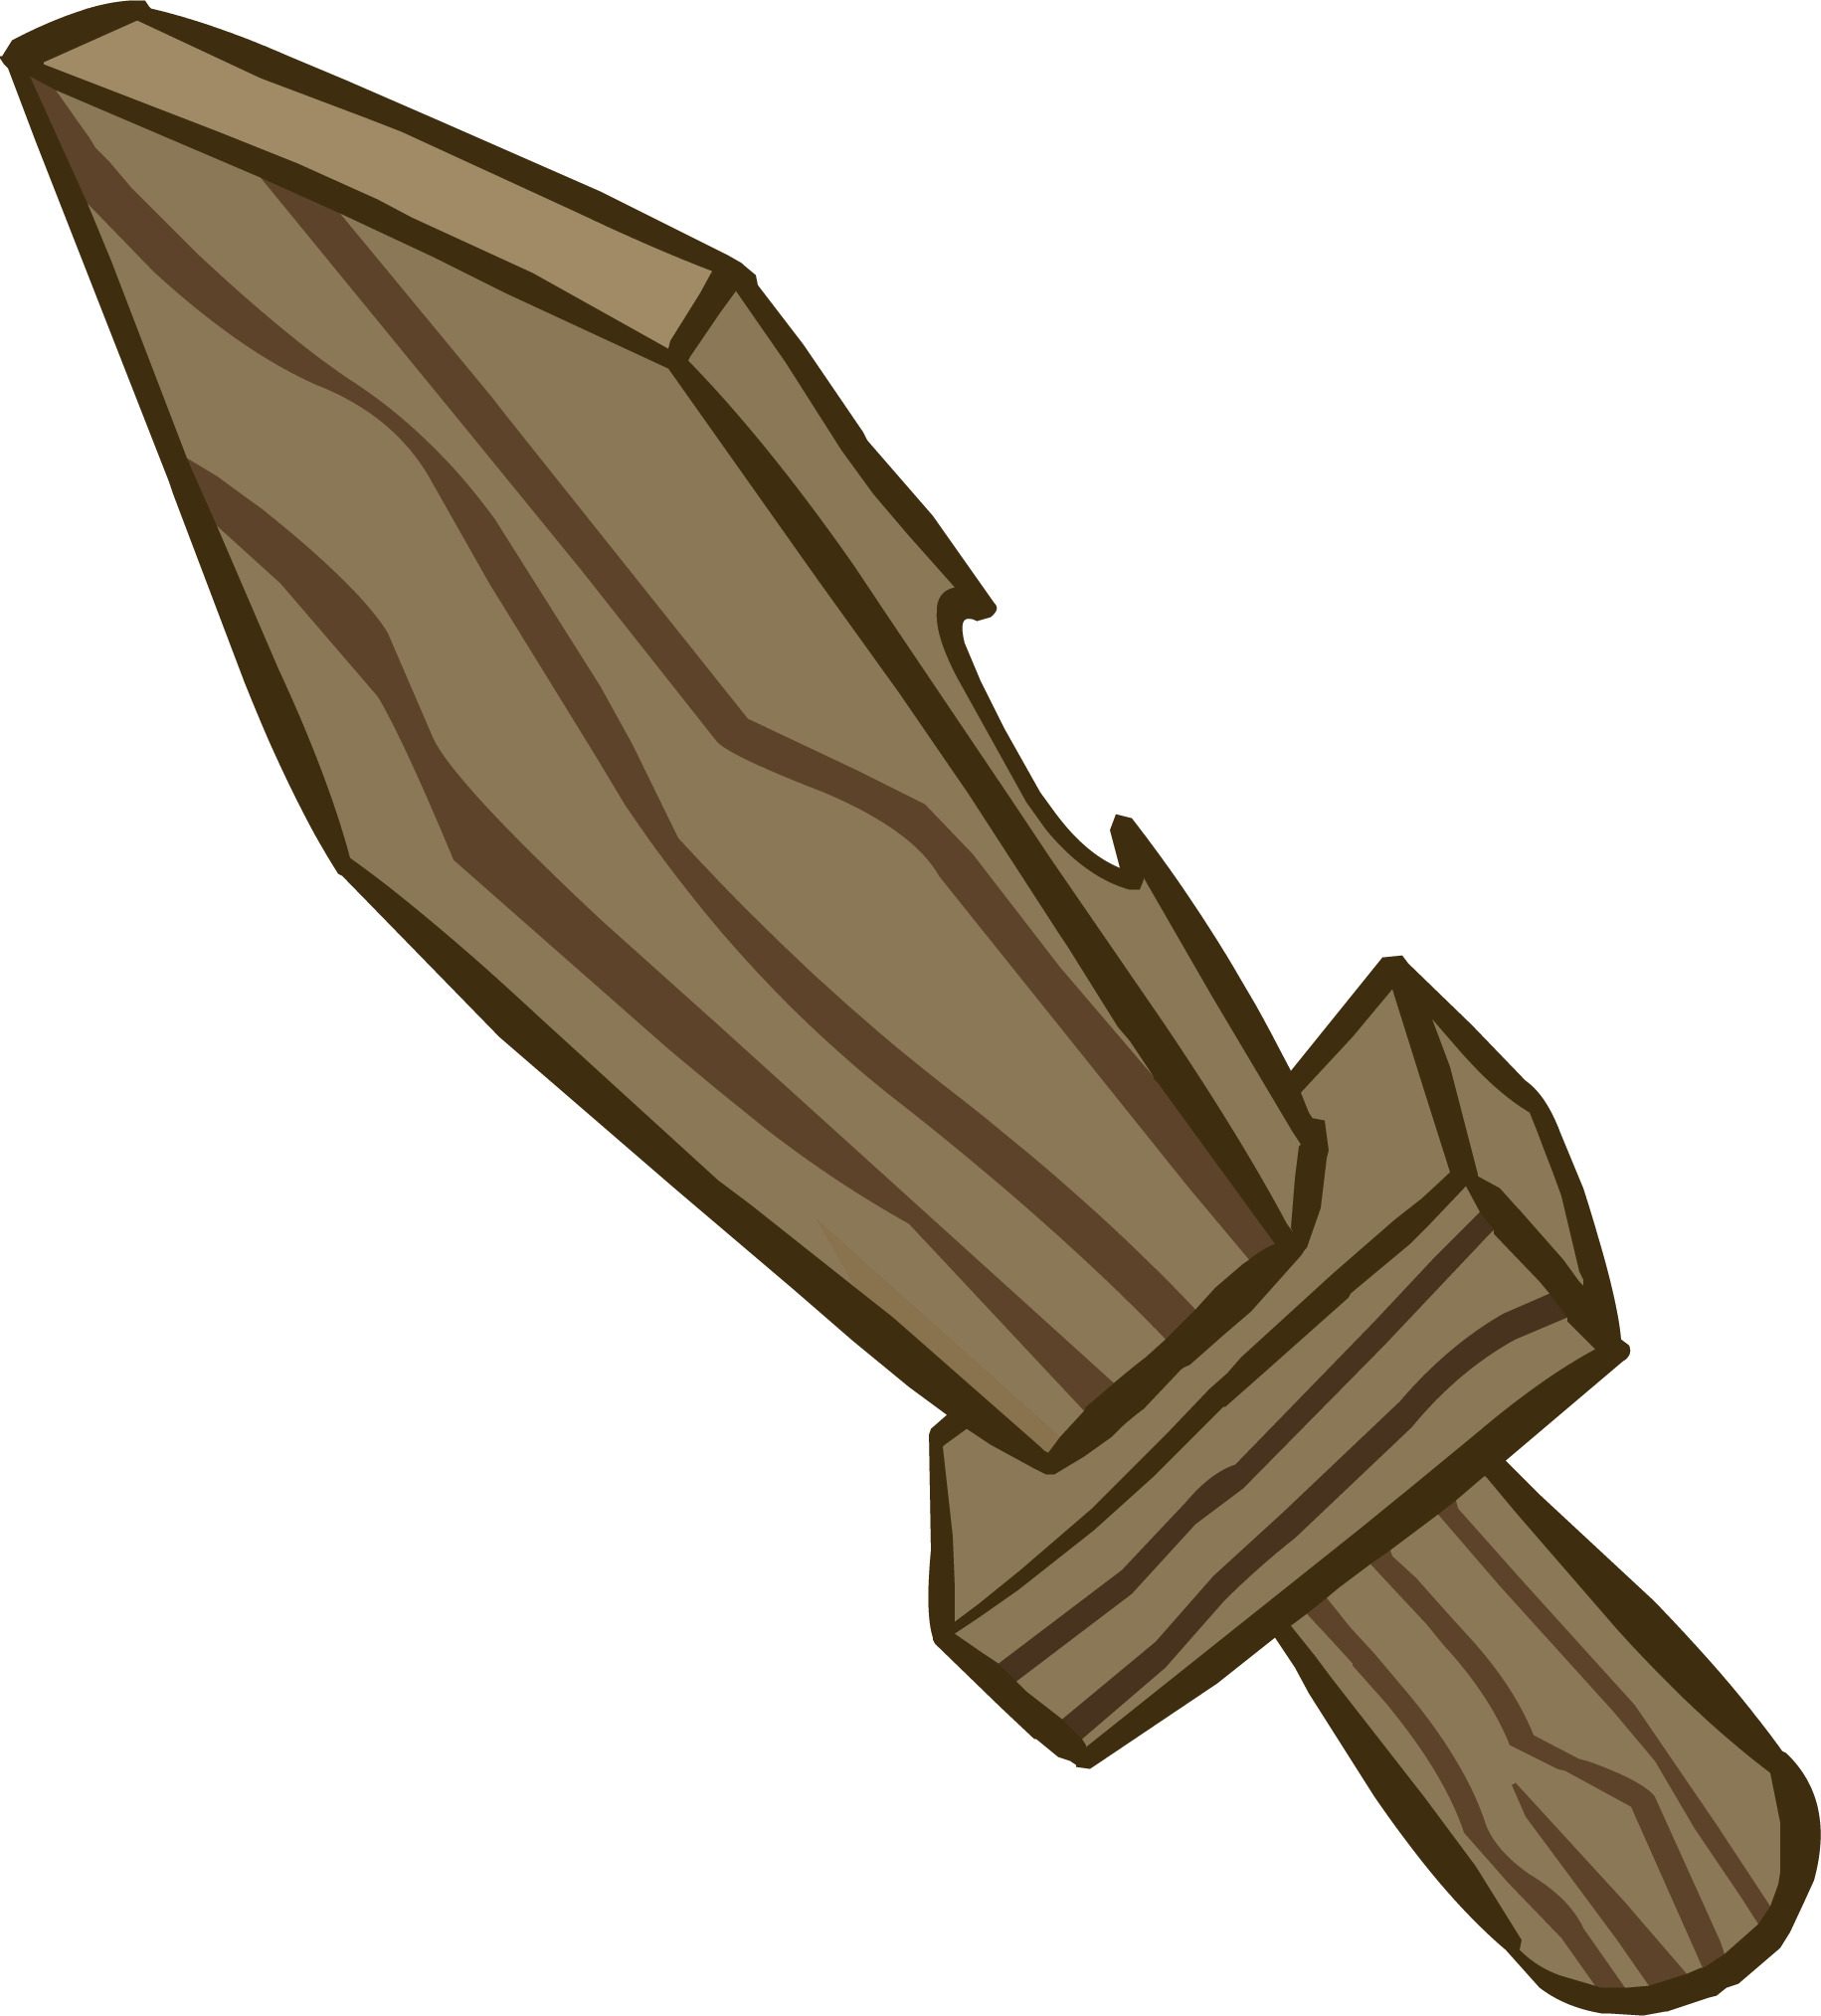 clipart sword espada